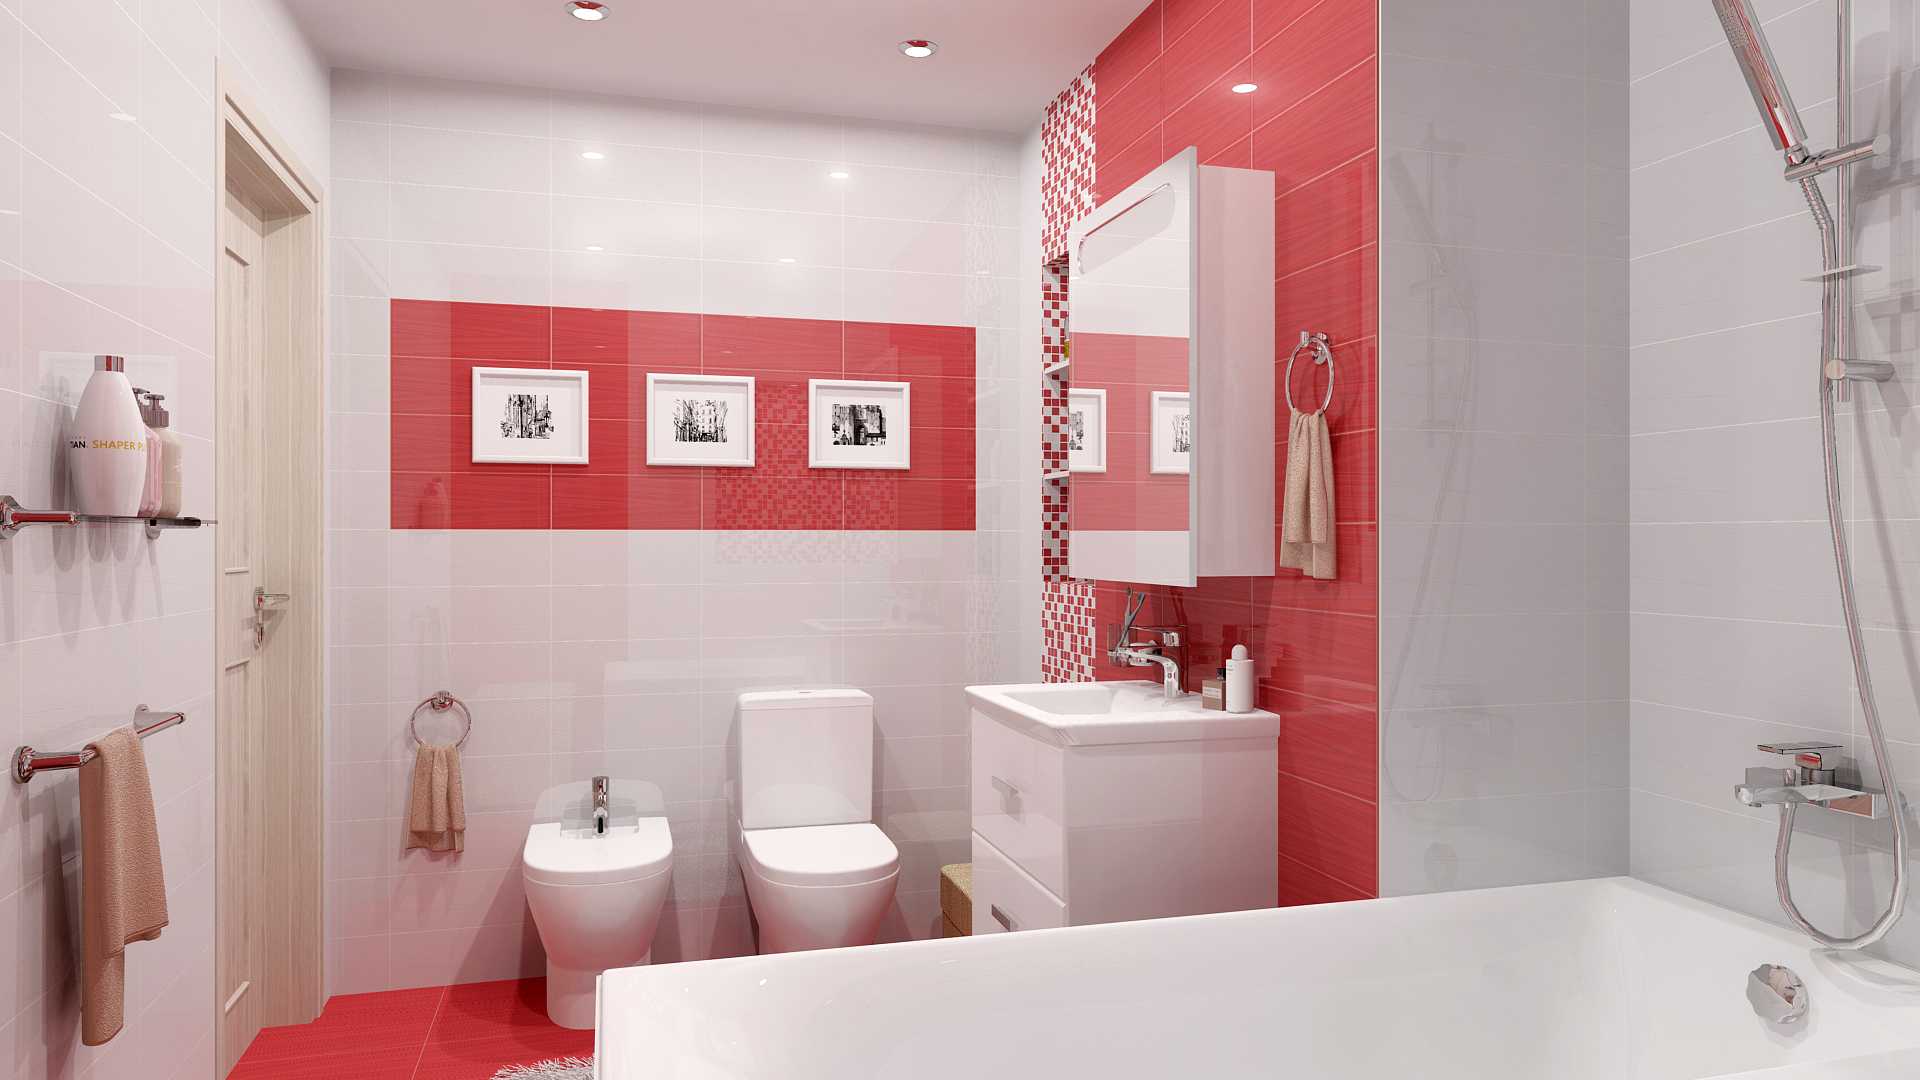 Отделка ванной комнаты своими руками видео-инструкция  Различные варианты дизайн ванных комнат, ниш из гипсокартона, укладки мозаики и плитки